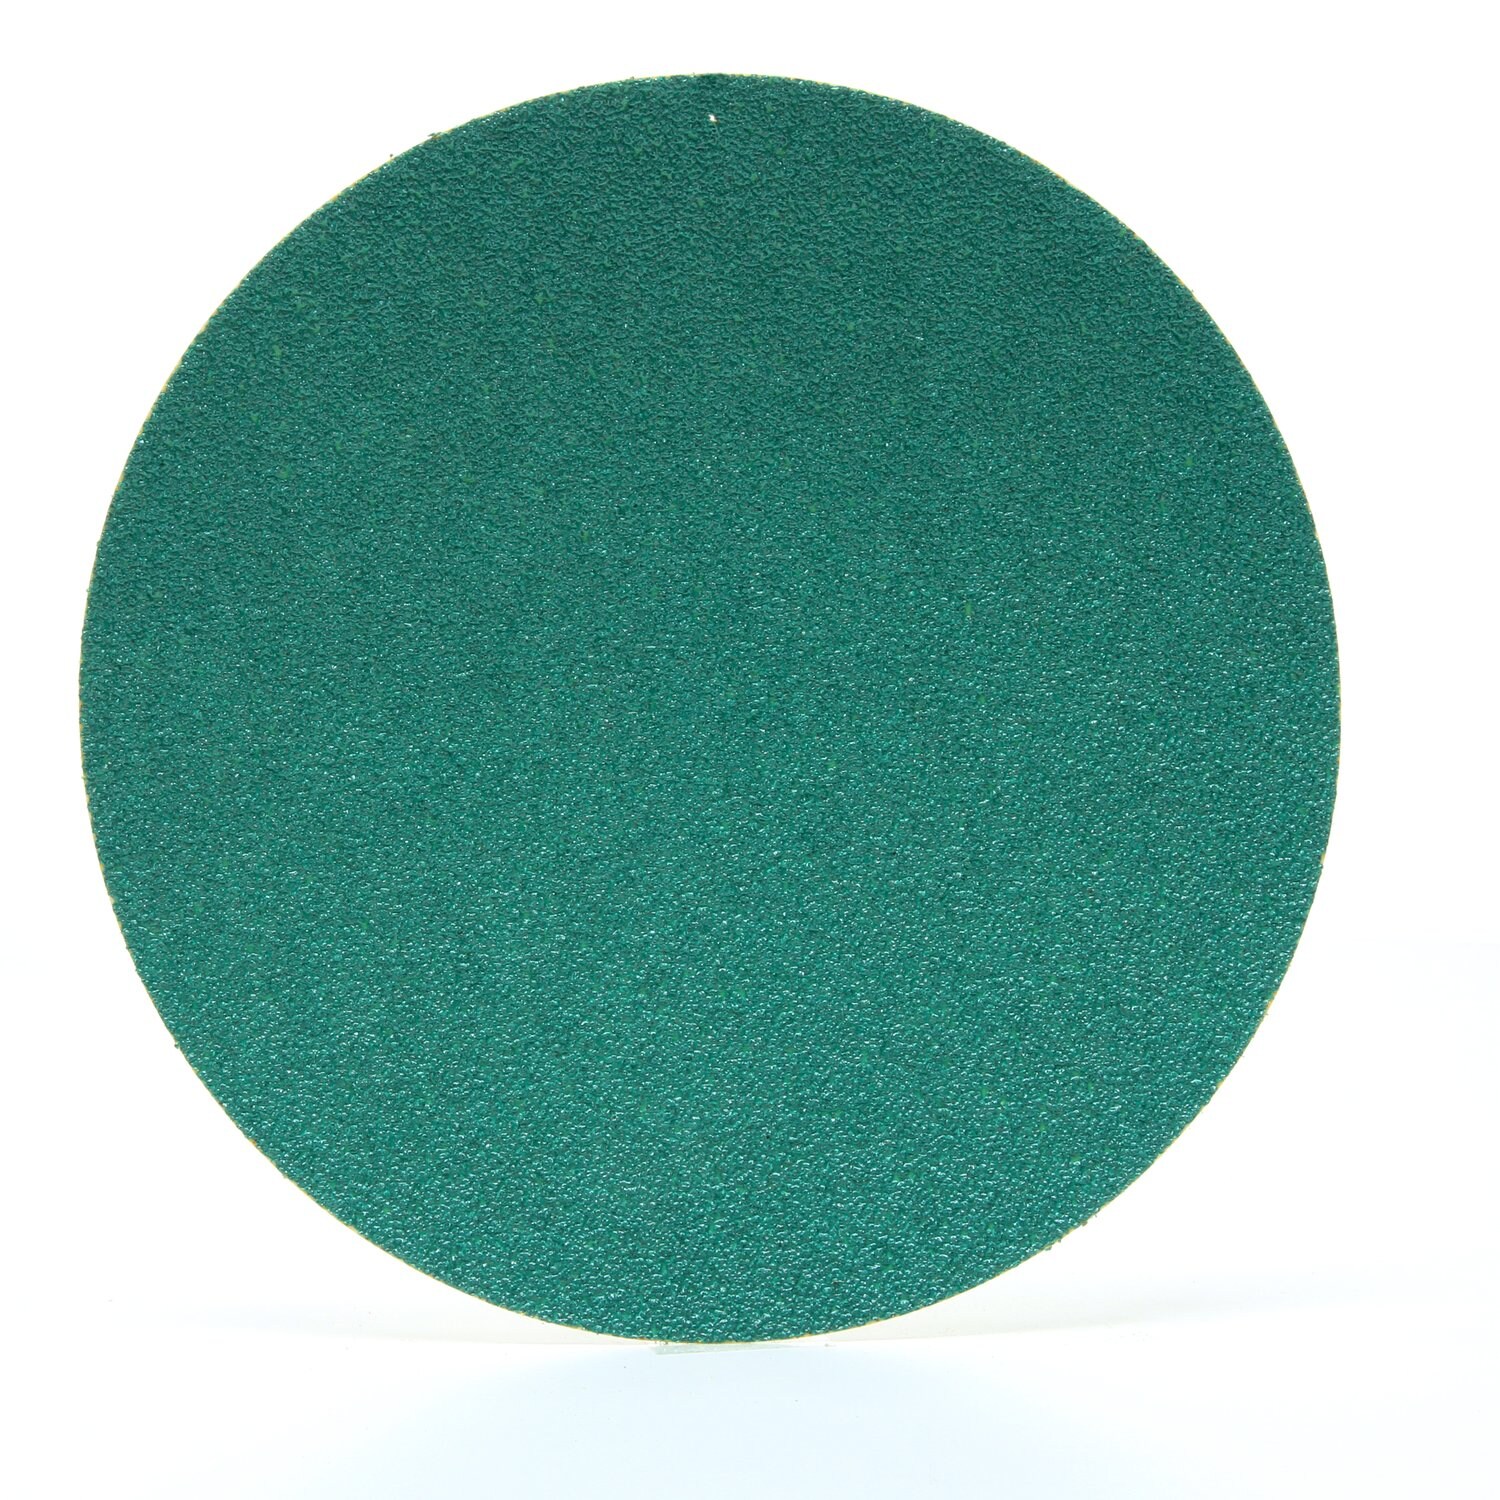 7100169187 - 3M Hookit Green Corps Paper Abrasive Disc 750U, 35330, 6 in, 60
grade, 500 discs per case